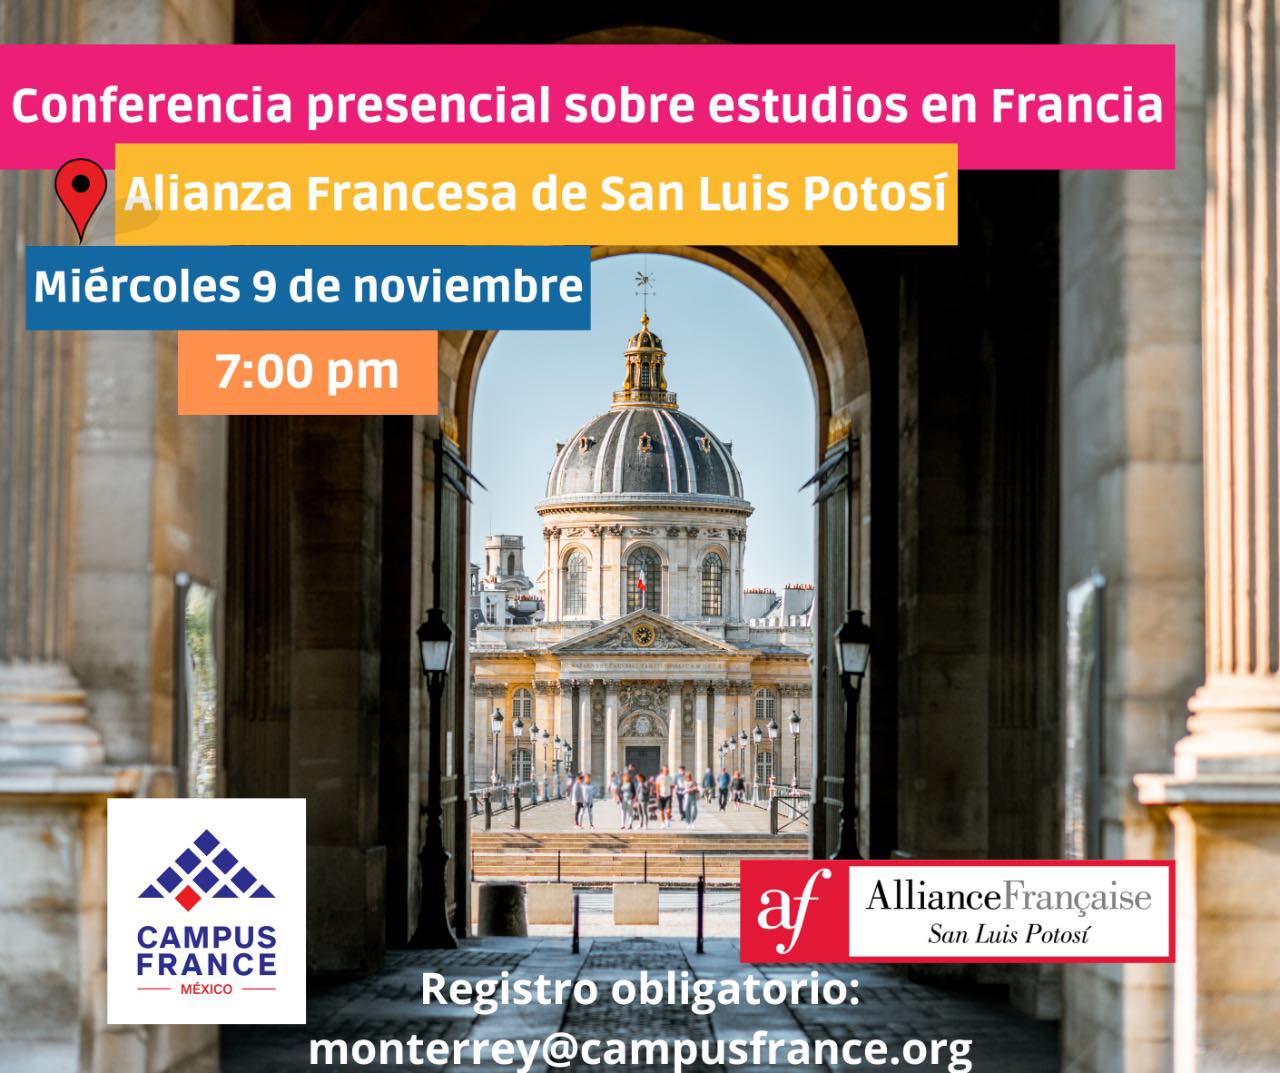 Campus France México Conferencia presencial sobre estudios en Francia